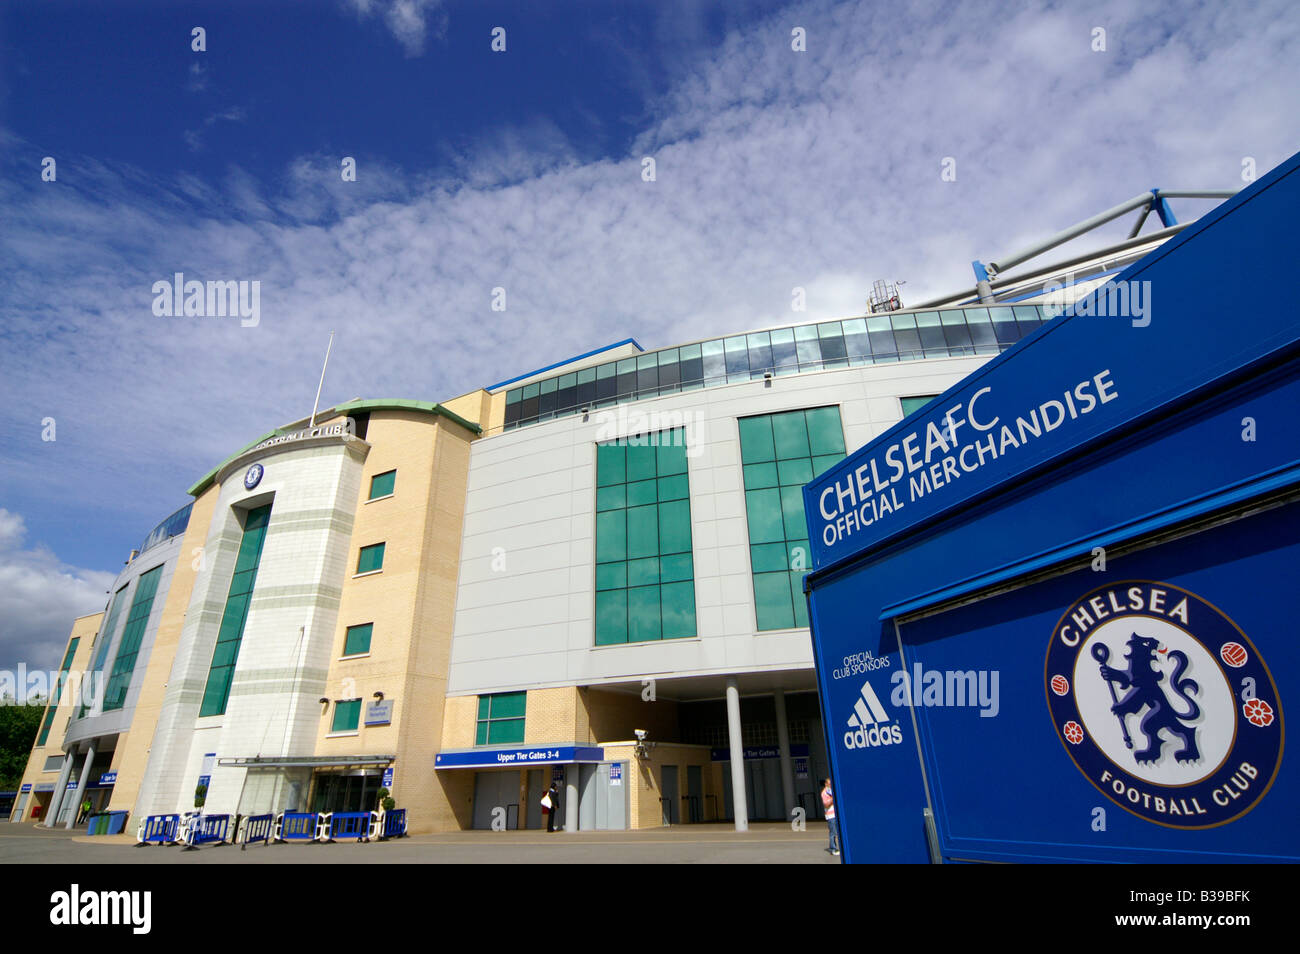 Le Club de Football de Chelsea stadium. Stamford Bridge, Londres Banque D'Images